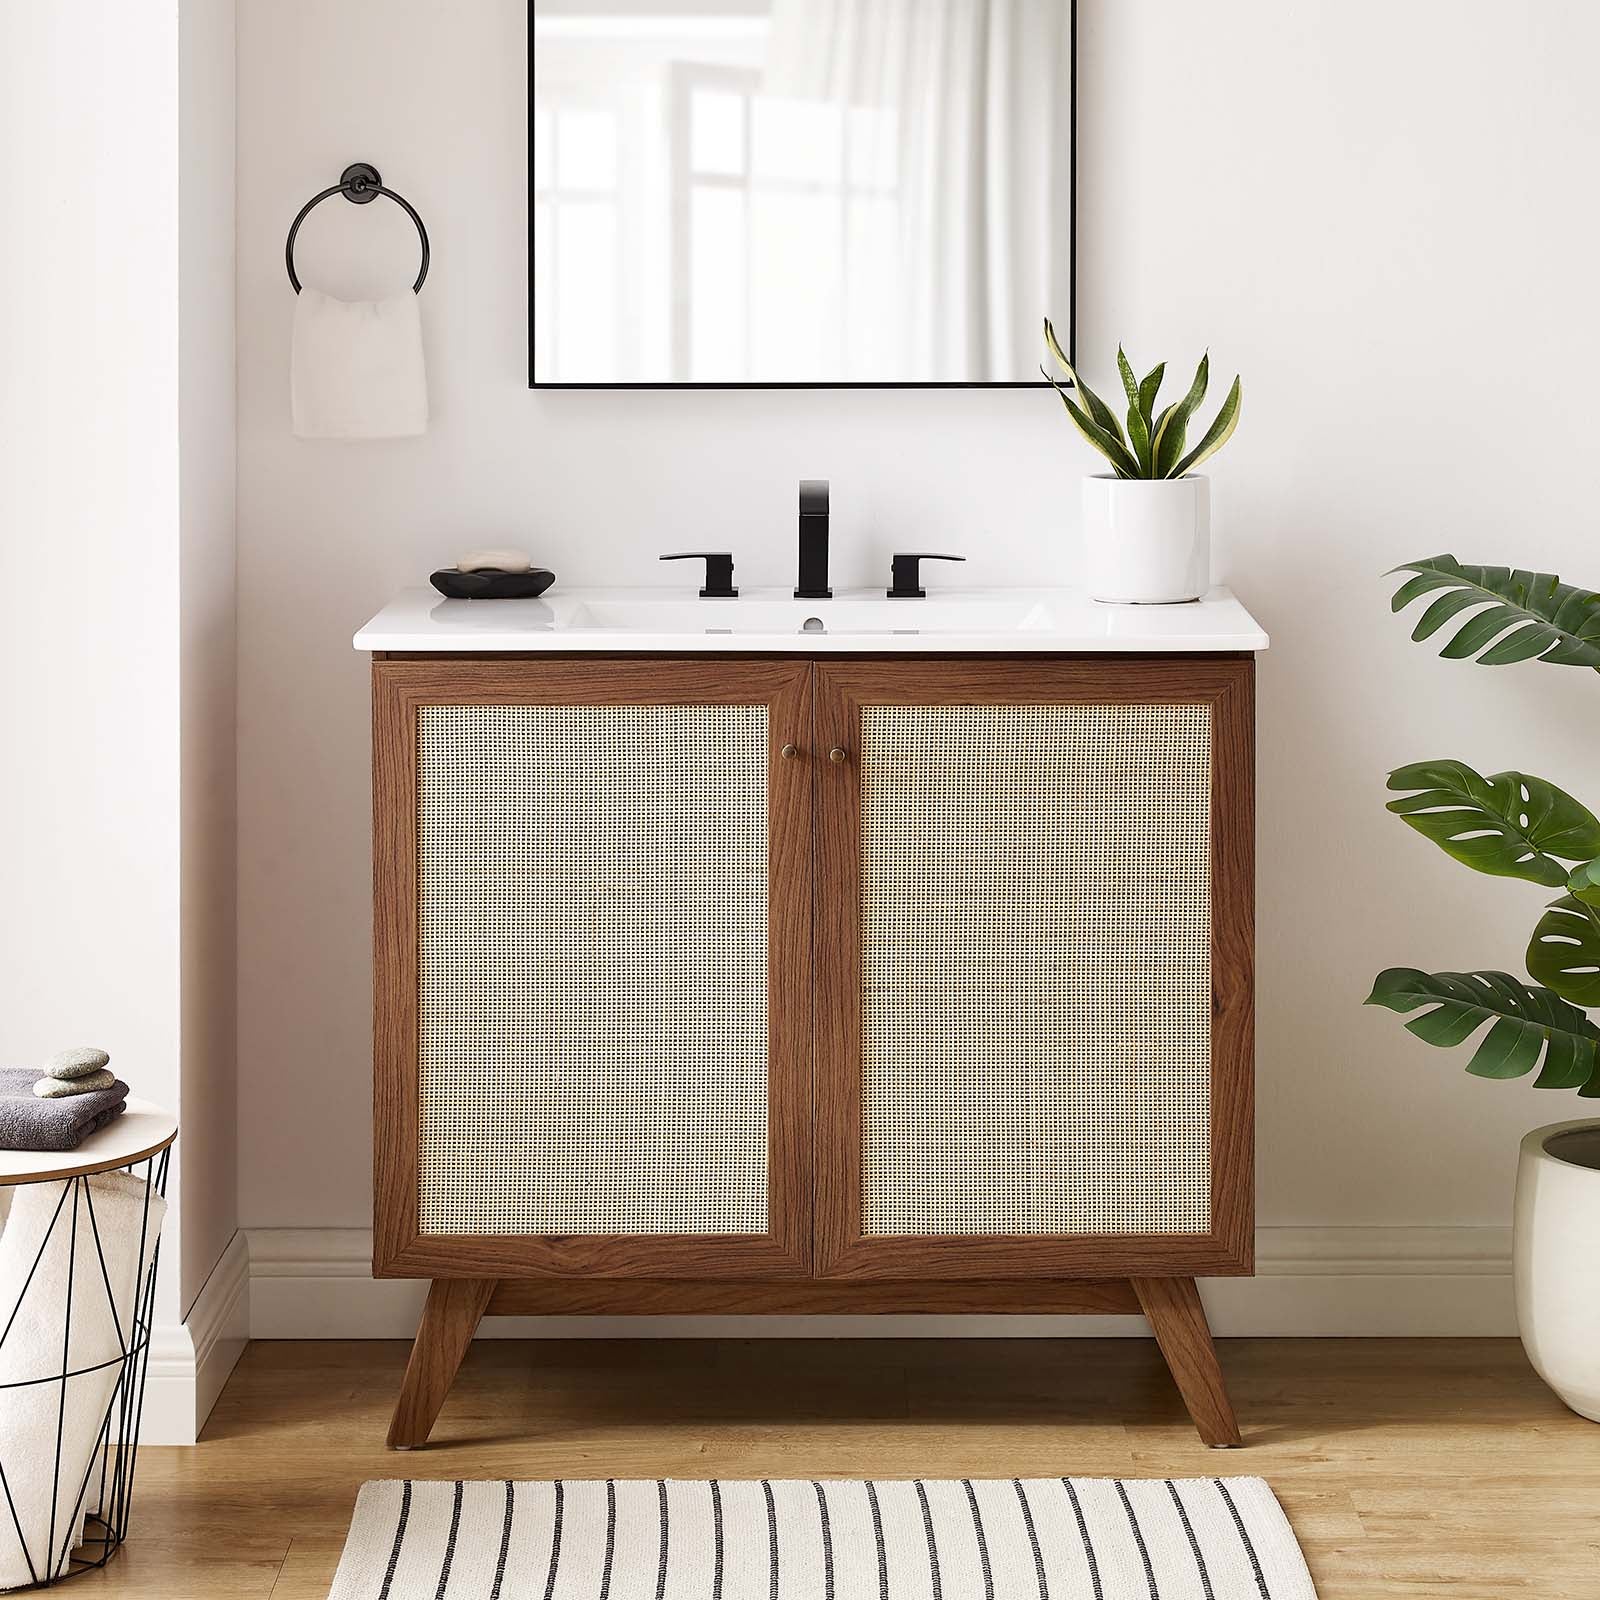 Soma 36” Bathroom Vanity-Bathroom Vanity-Modway-Wall2Wall Furnishings